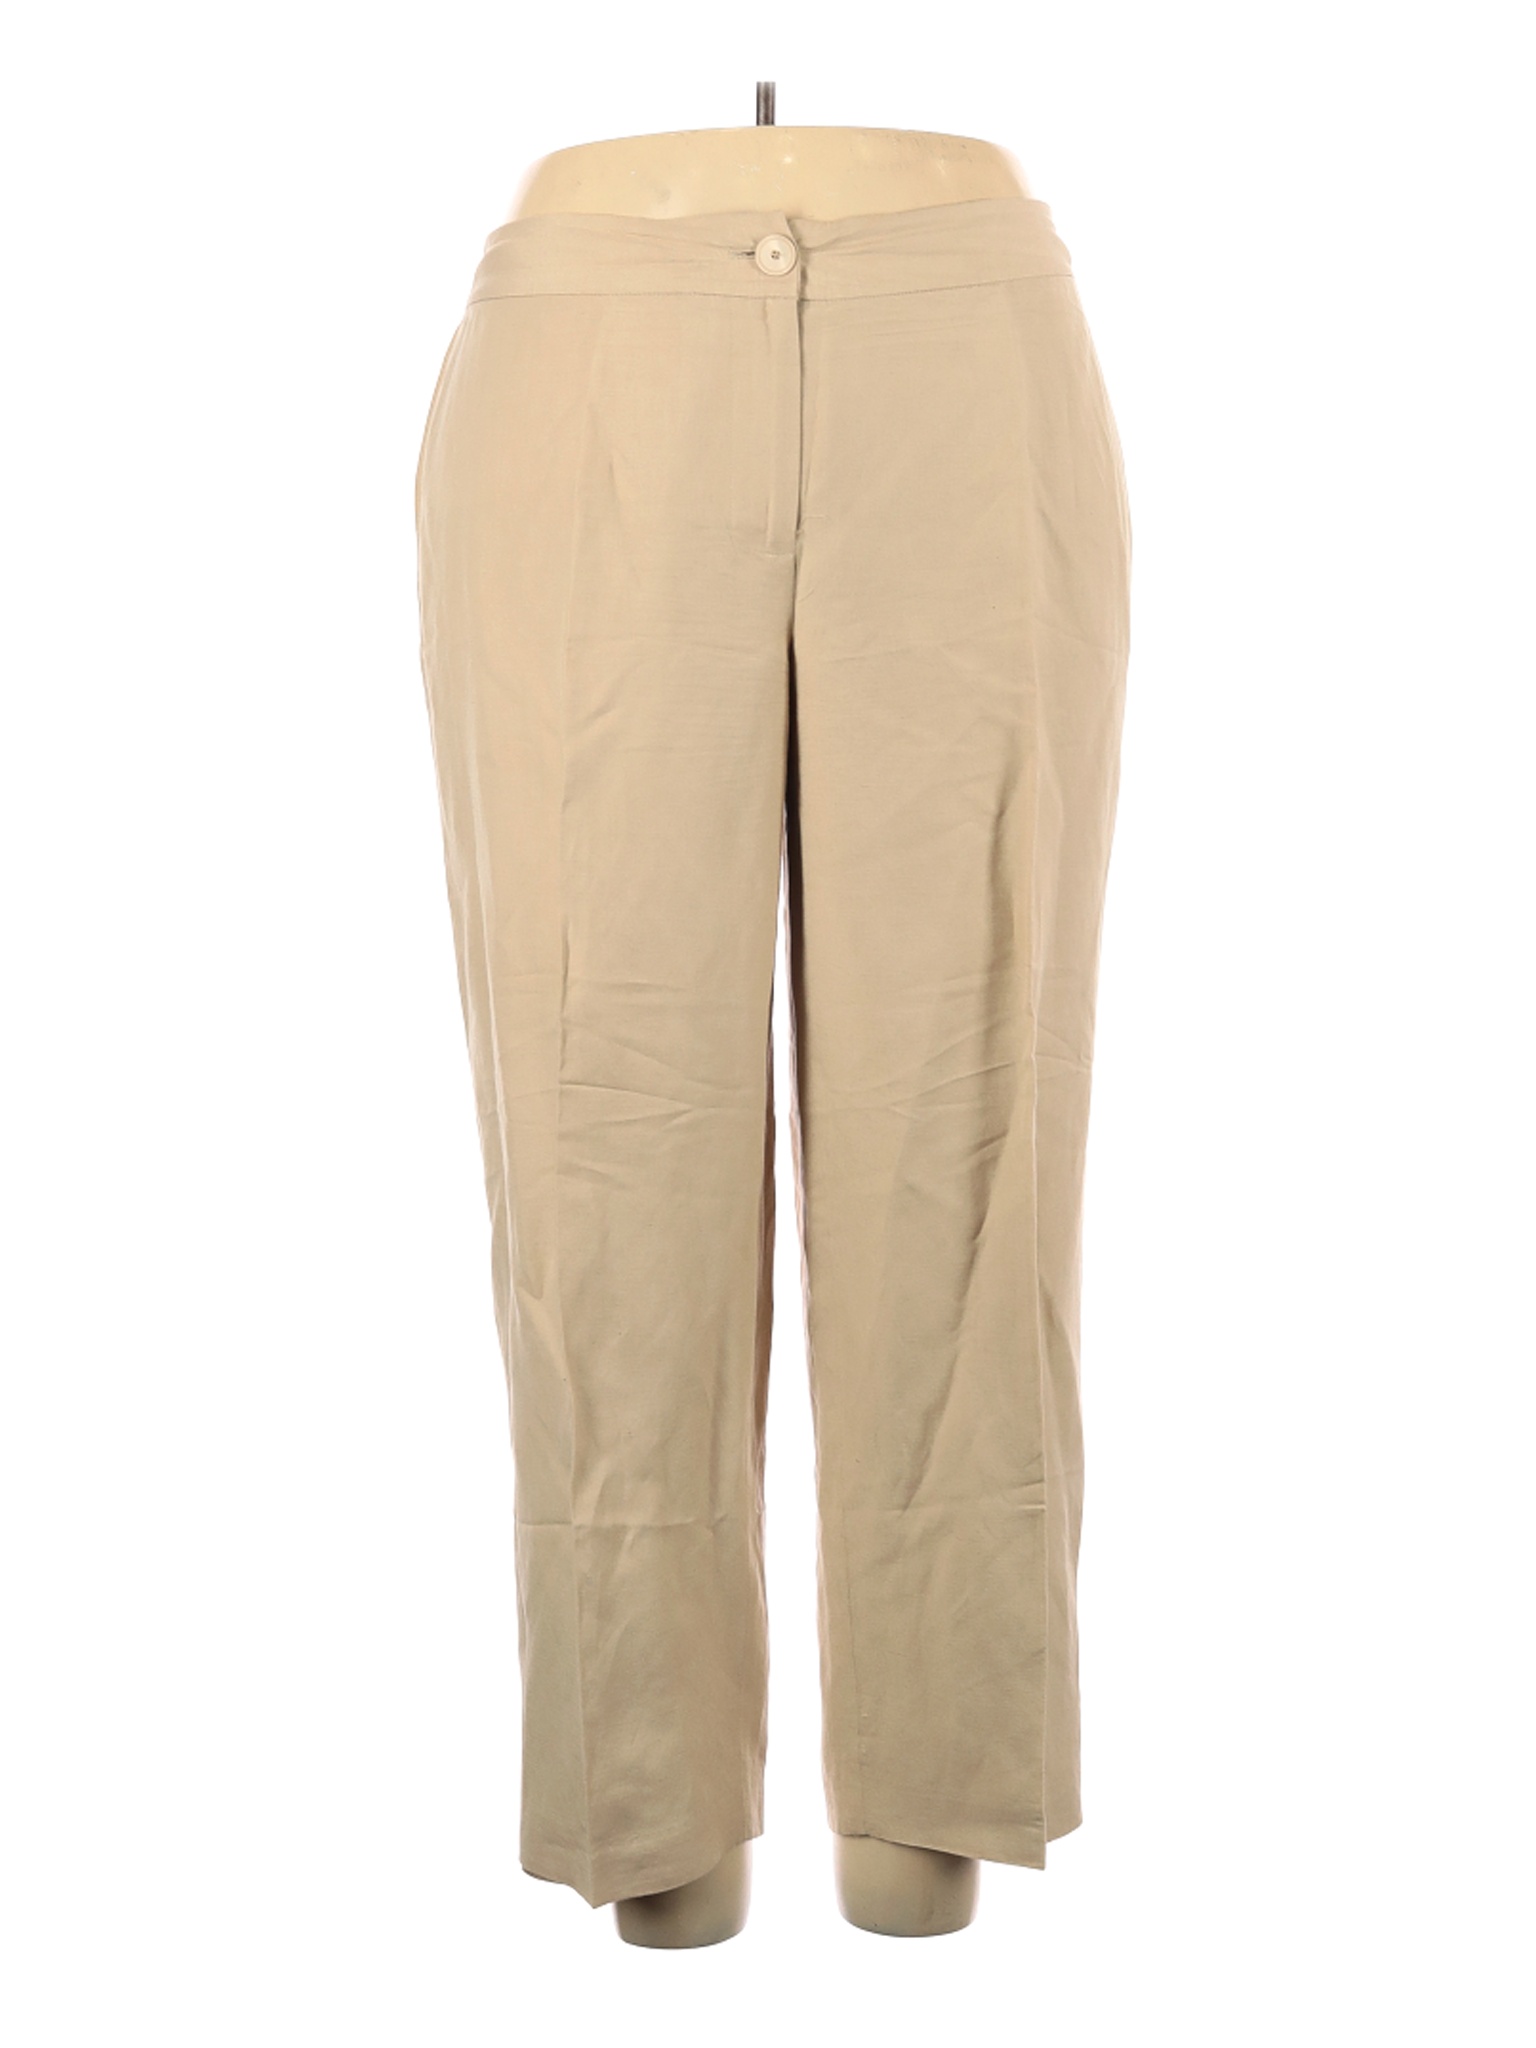 Kate Hill Women Brown Linen Pants 18 Plus | eBay